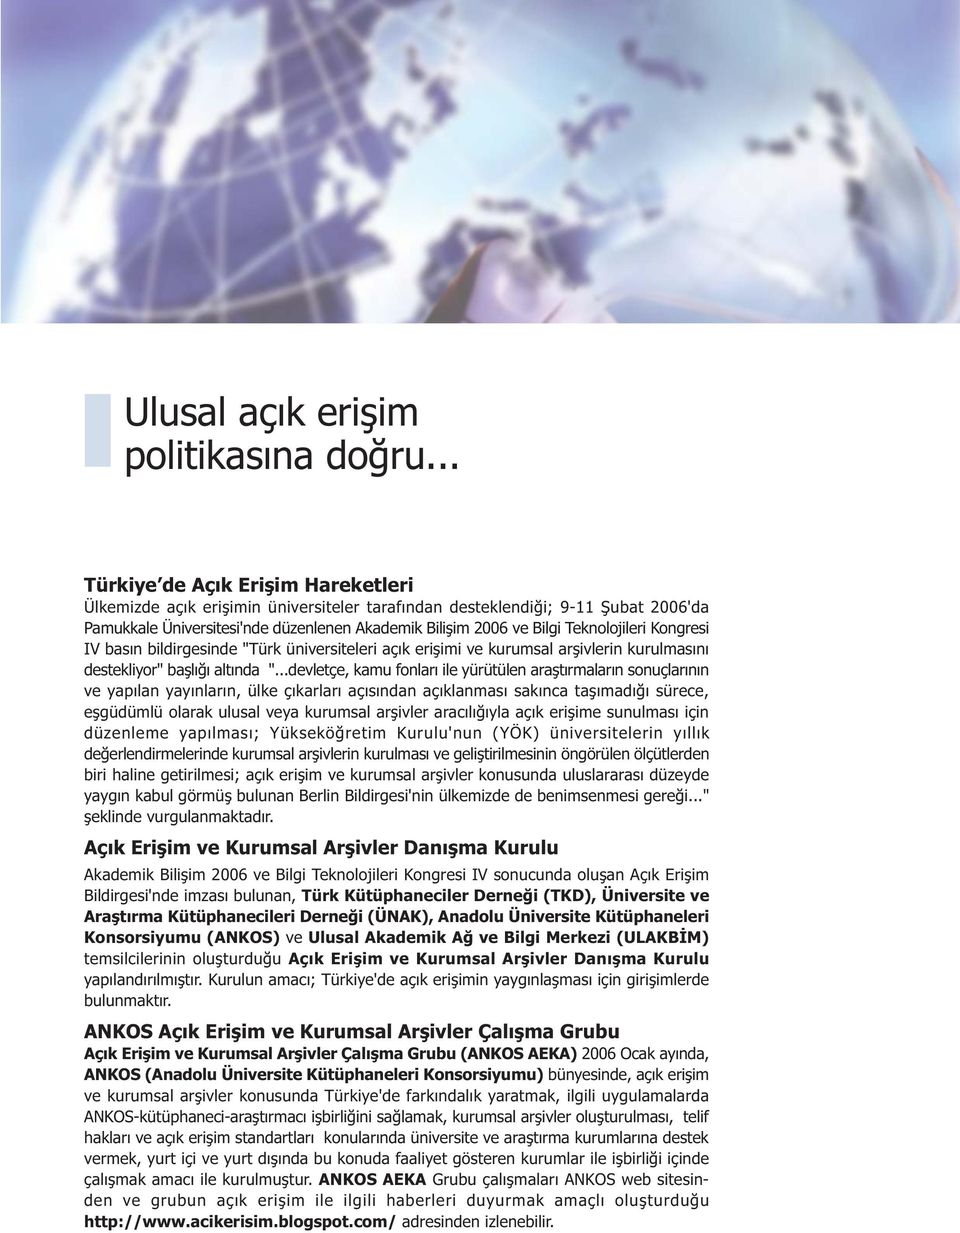 Teknolojileri Kongresi IV basýn bildirgesinde "Türk üniversiteleri açýk eriþimi ve kurumsal arþivlerin kurulmasýný destekliyor" baþlýðý altýnda ".